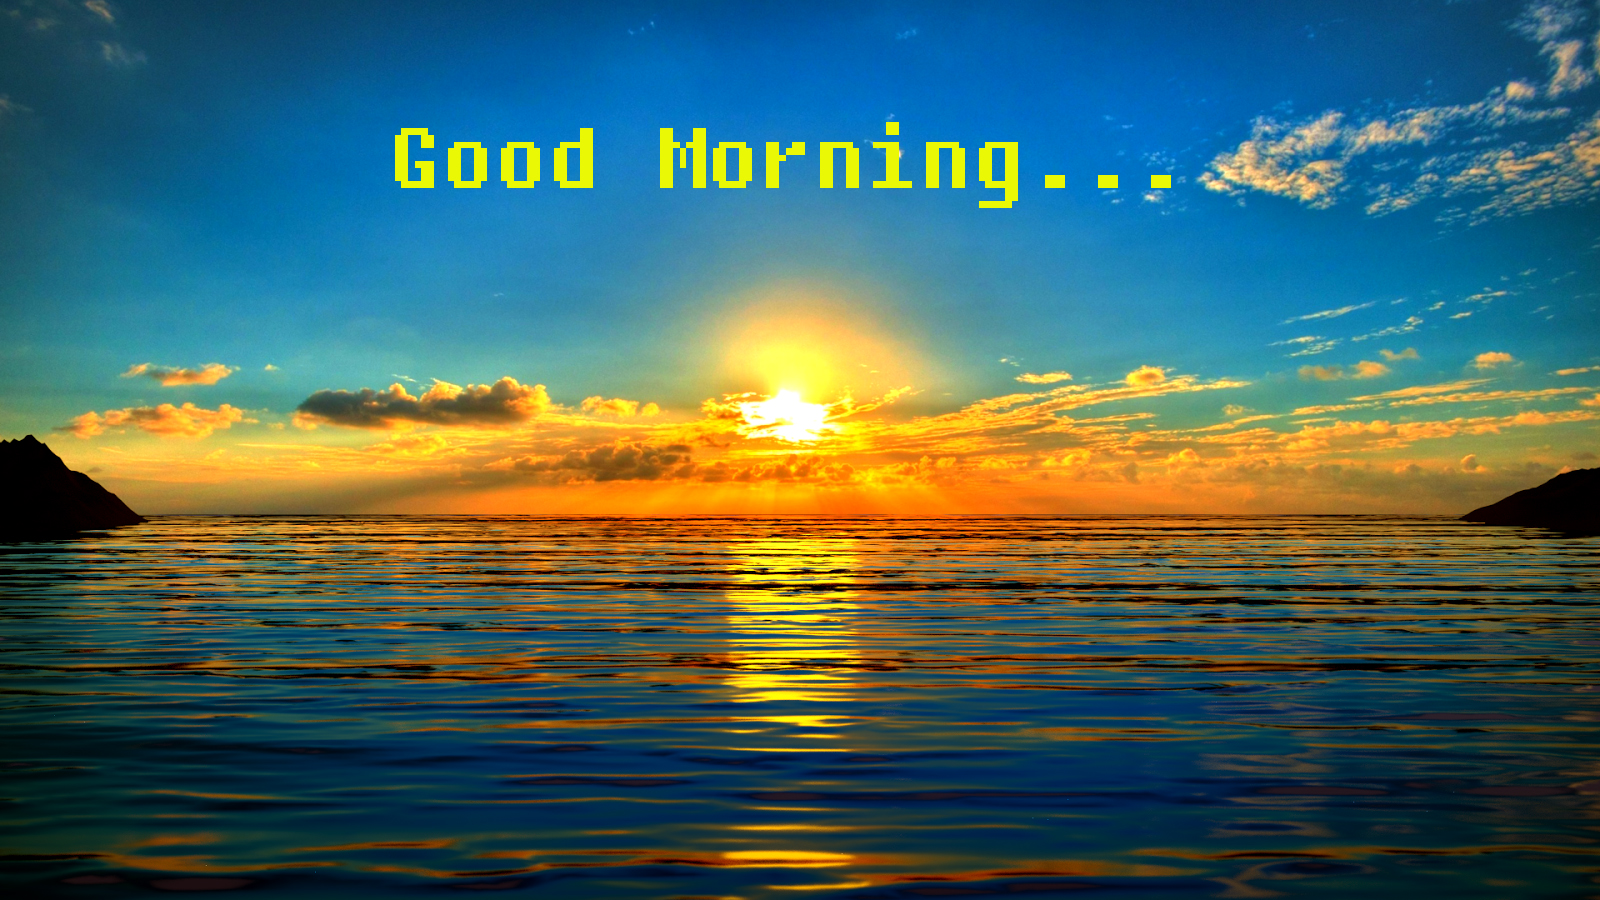 Sweet Sunrise Image – Good Morning